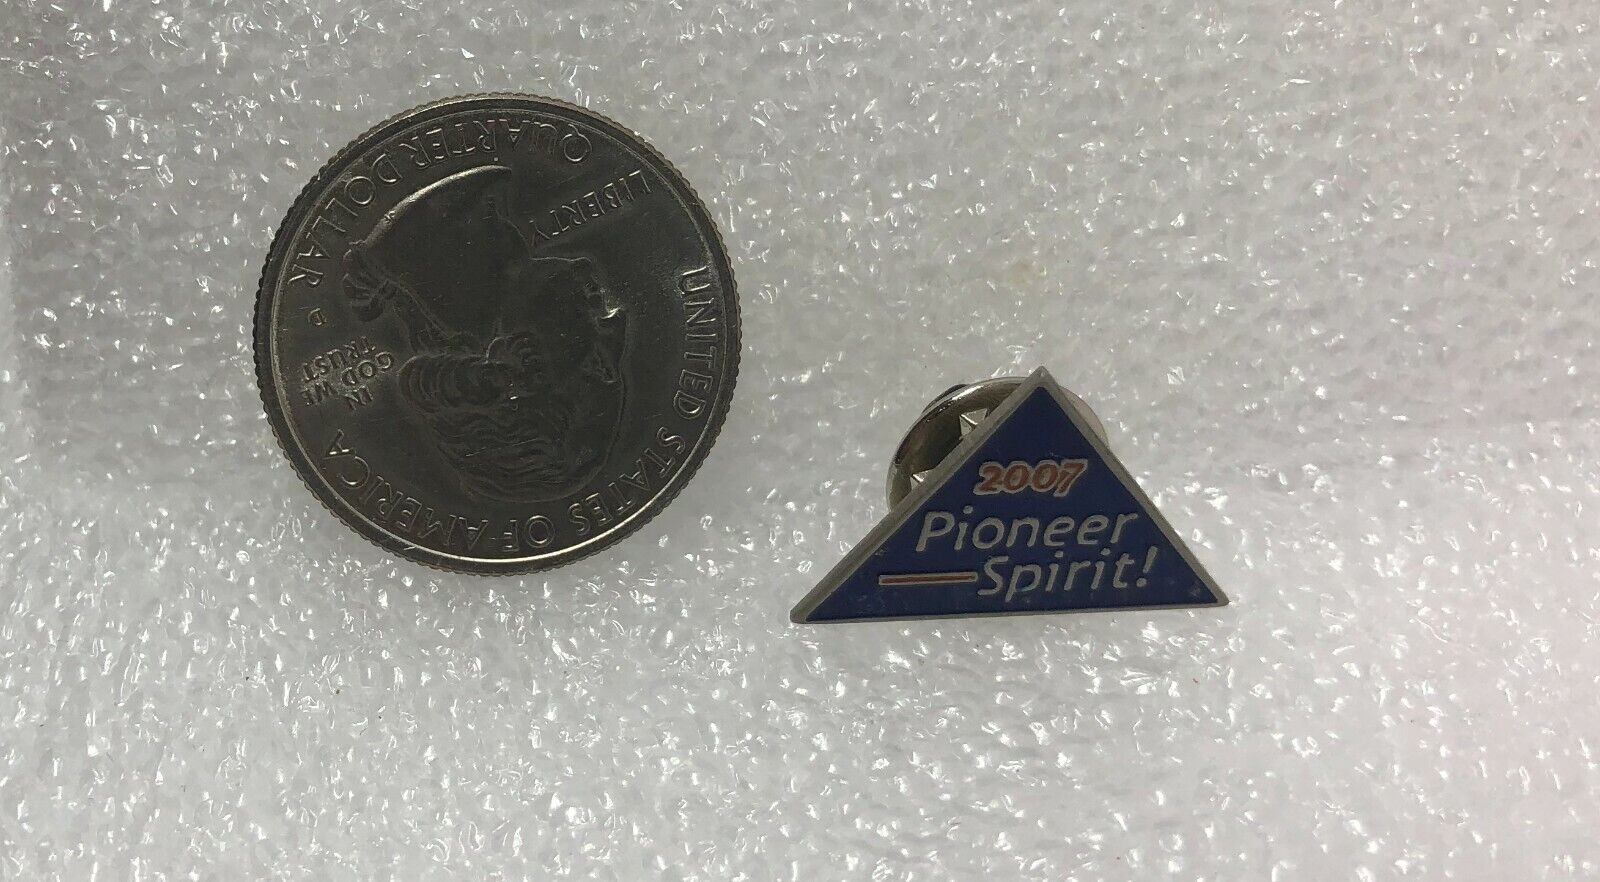 2007 Telecompioneers Pioneer Spirit Pin